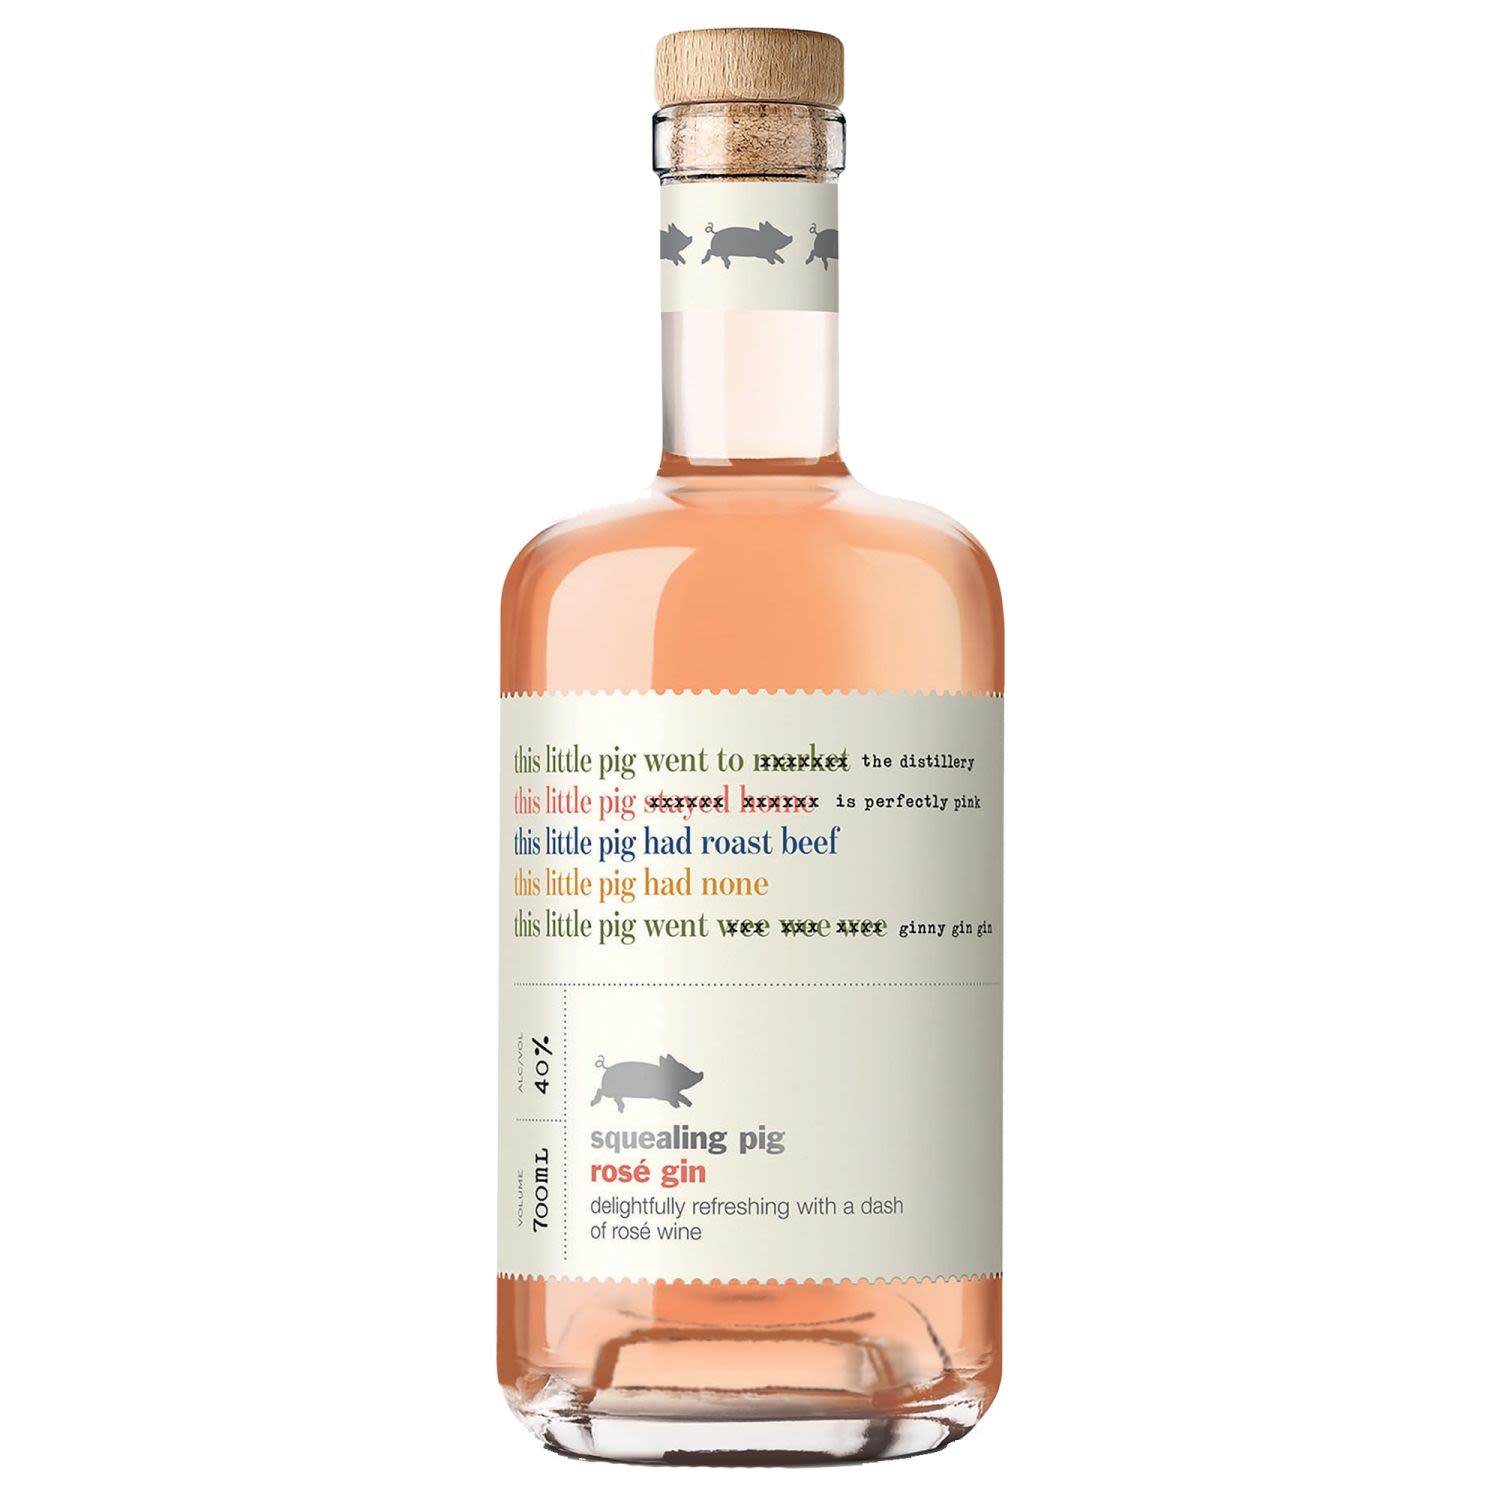 Squealing Pig Rose Gin 700mL Bottle